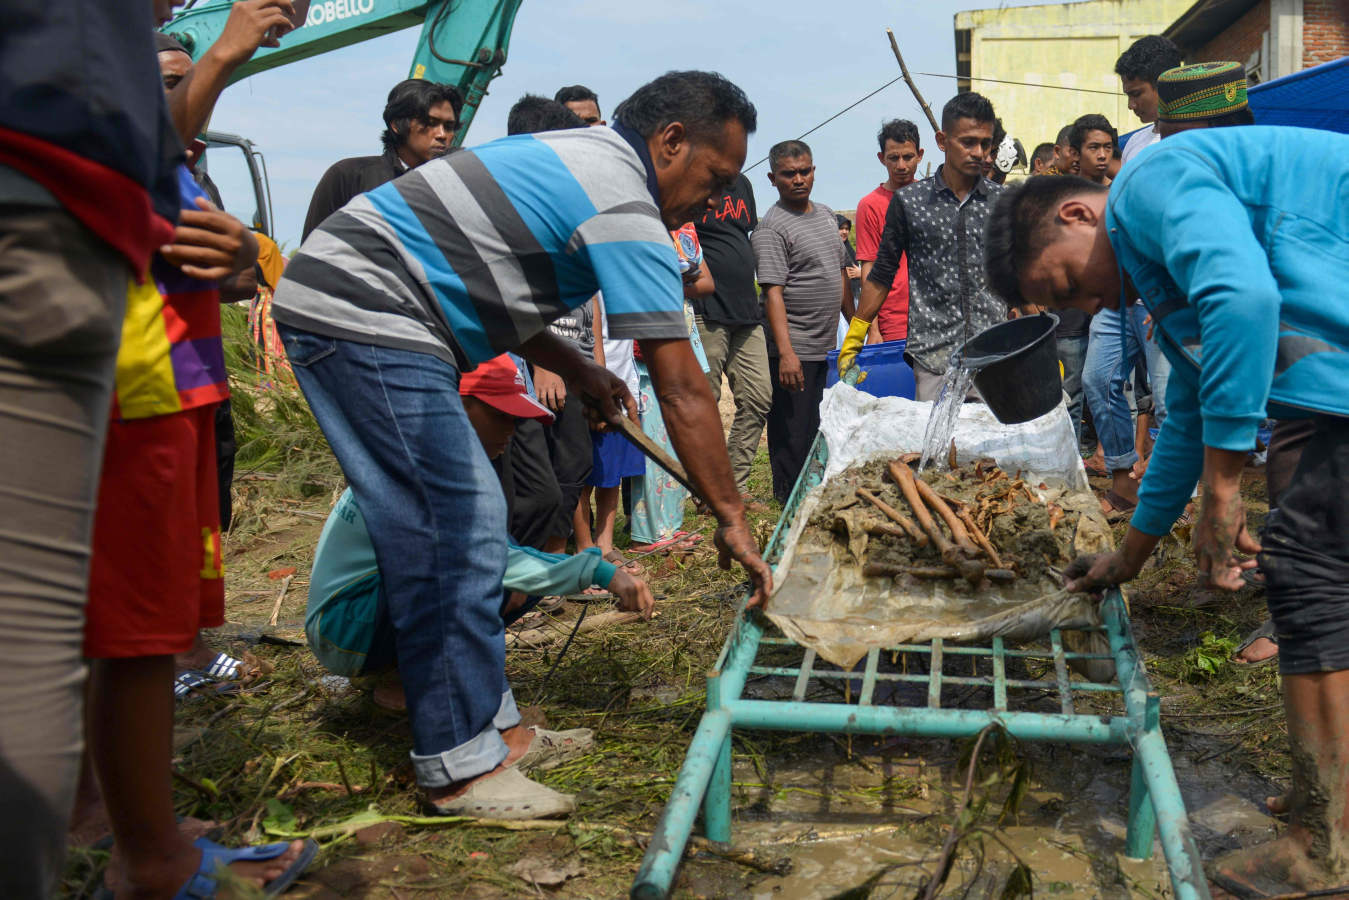 Los equipos de emergencia de Indonesia trabajaron hoy para encontrar supervivientes entre los escombros dejados por el tsunami que golpeó el sábado el estrecho de Sonda, entre las islas de Java y Sumatra, cuya última actualización de cifras es de 371 muertos, 128 desaparecidos y 1.459 heridos.